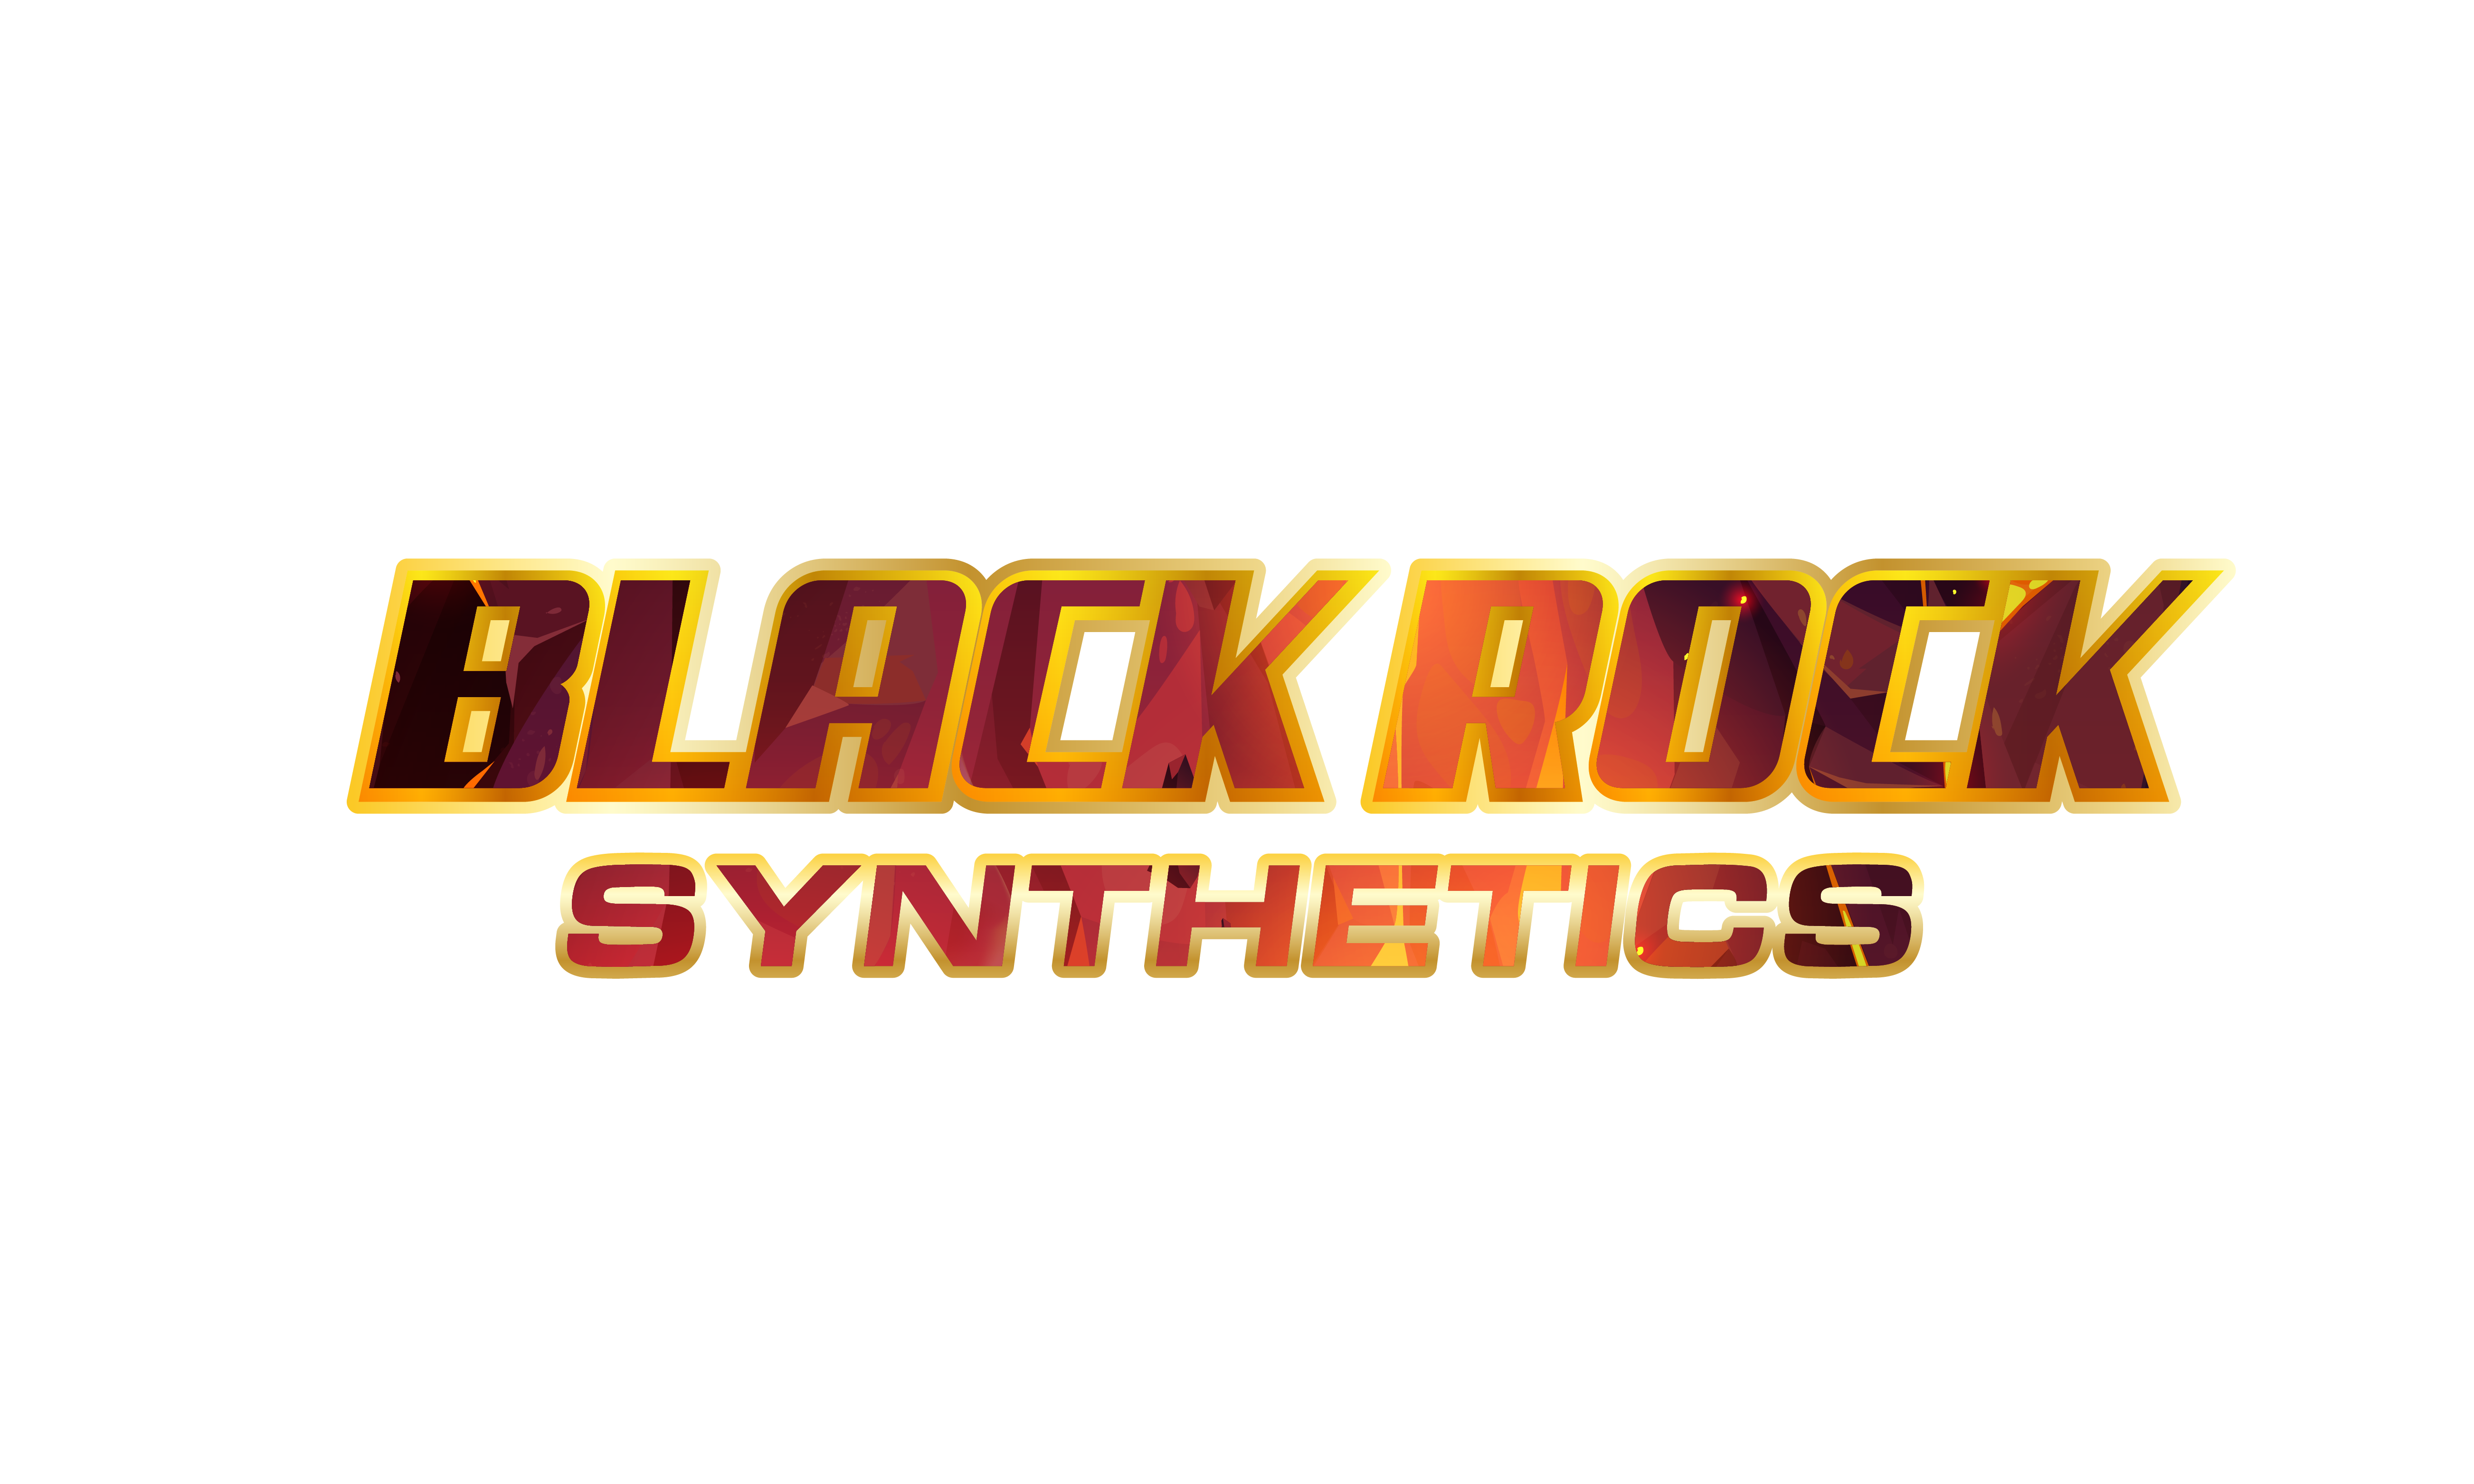 Blackrock Synthetics